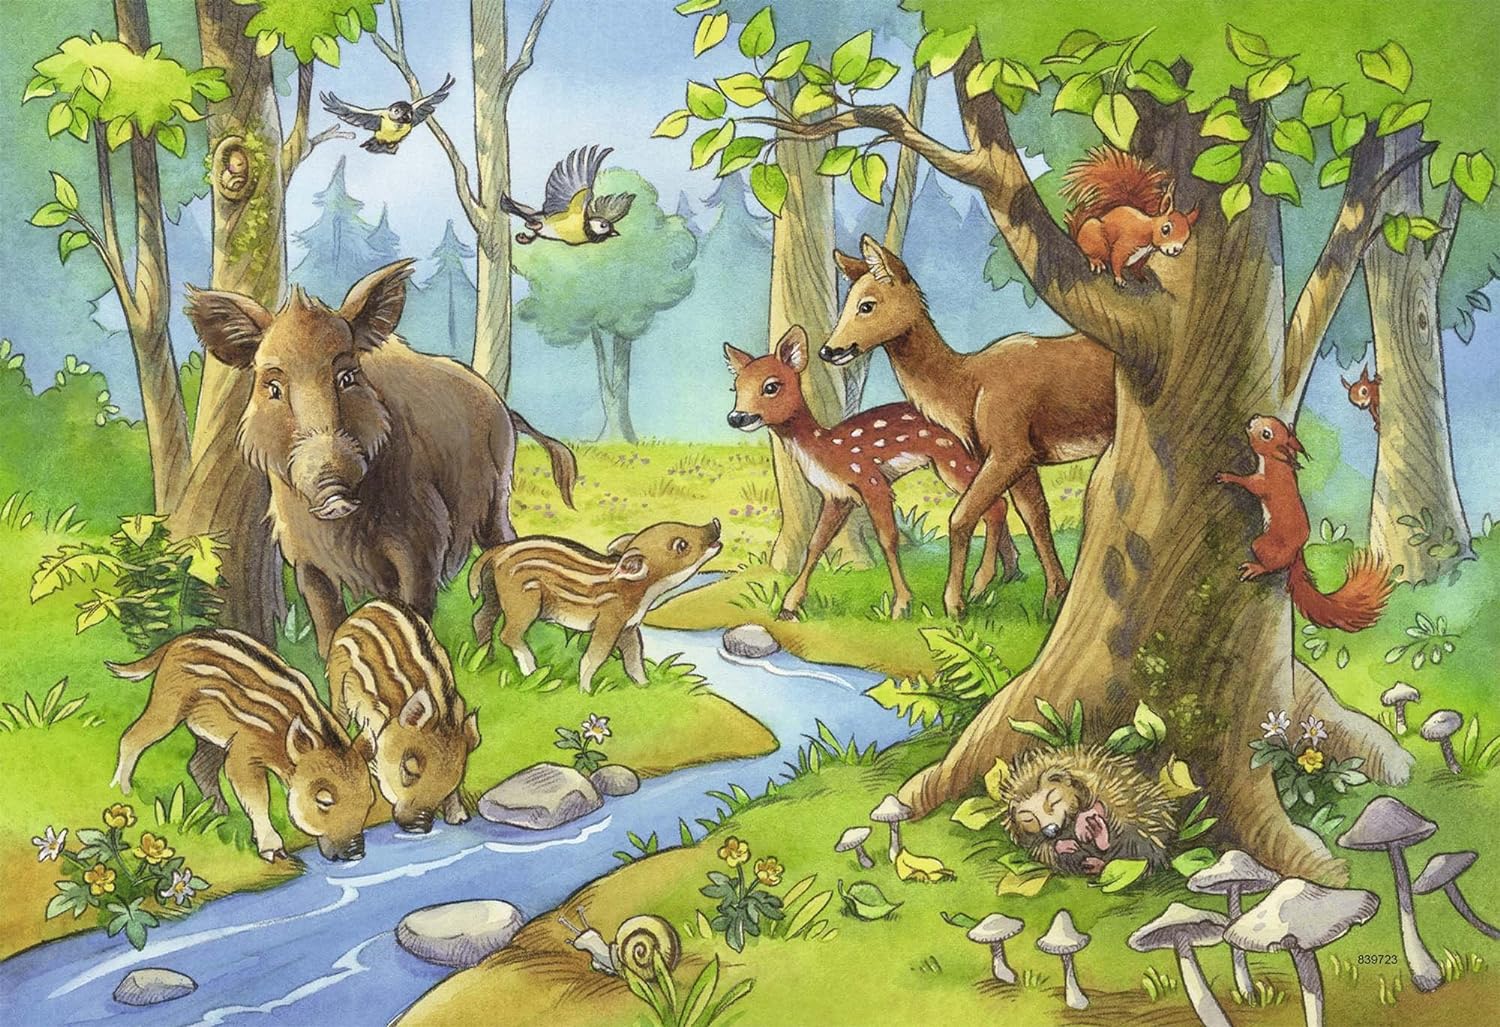 Сказка о жизни животных весной